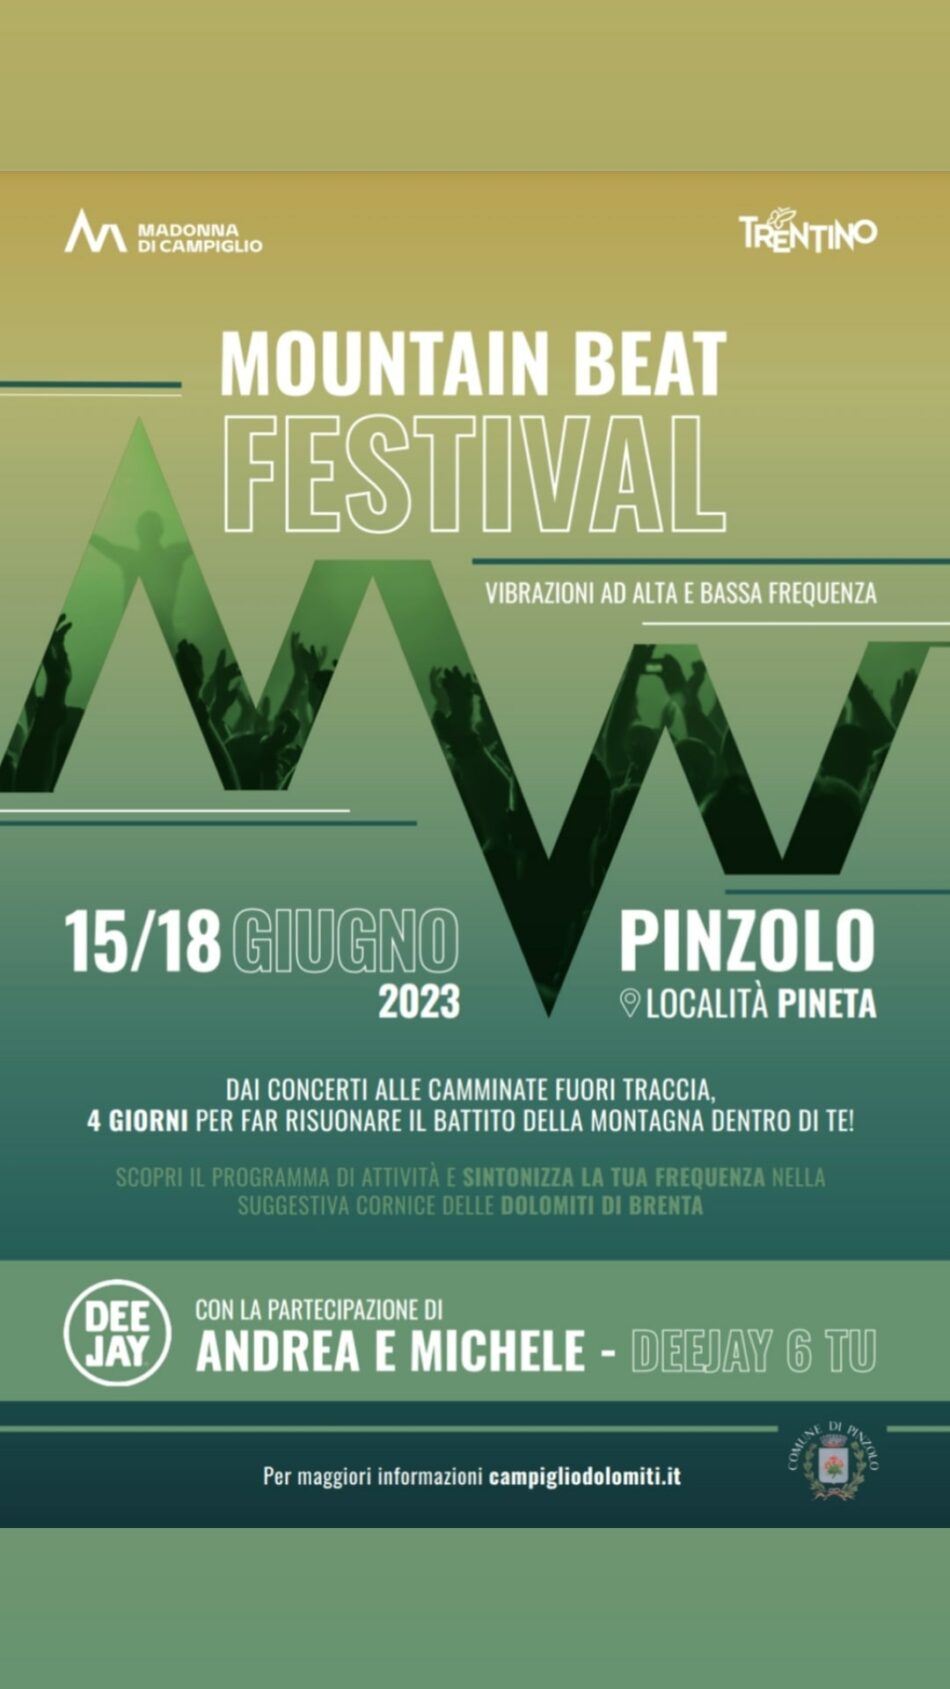 Pinzolo 15/18 giugno: Con il “Mountain Beat Festival” parte alla grande l’estate di Madonna di Campiglio